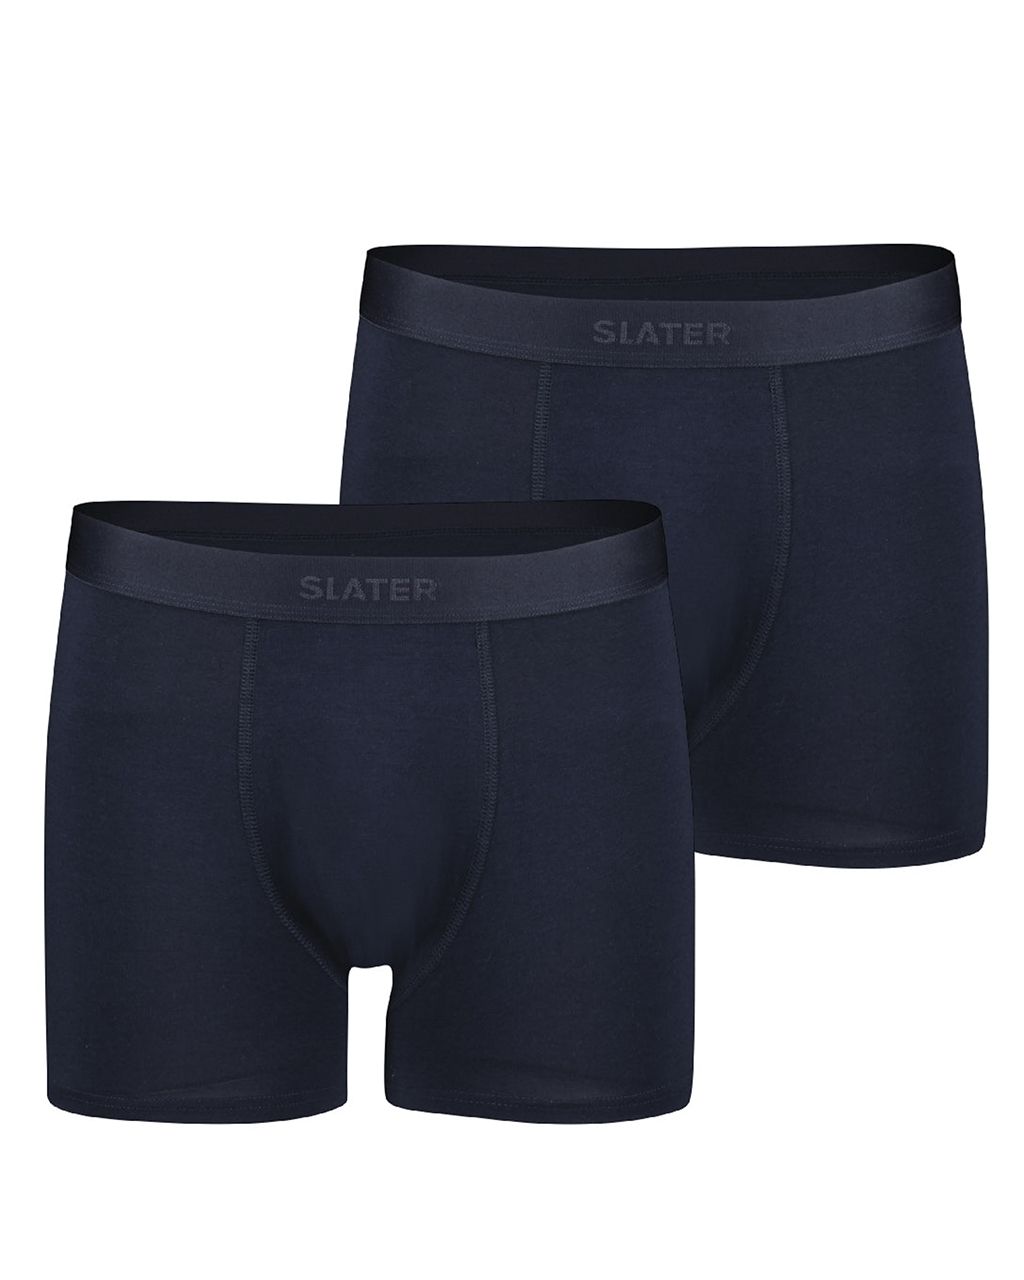 Slater Boxershort 2-pack Donker blauw 078429-001-L